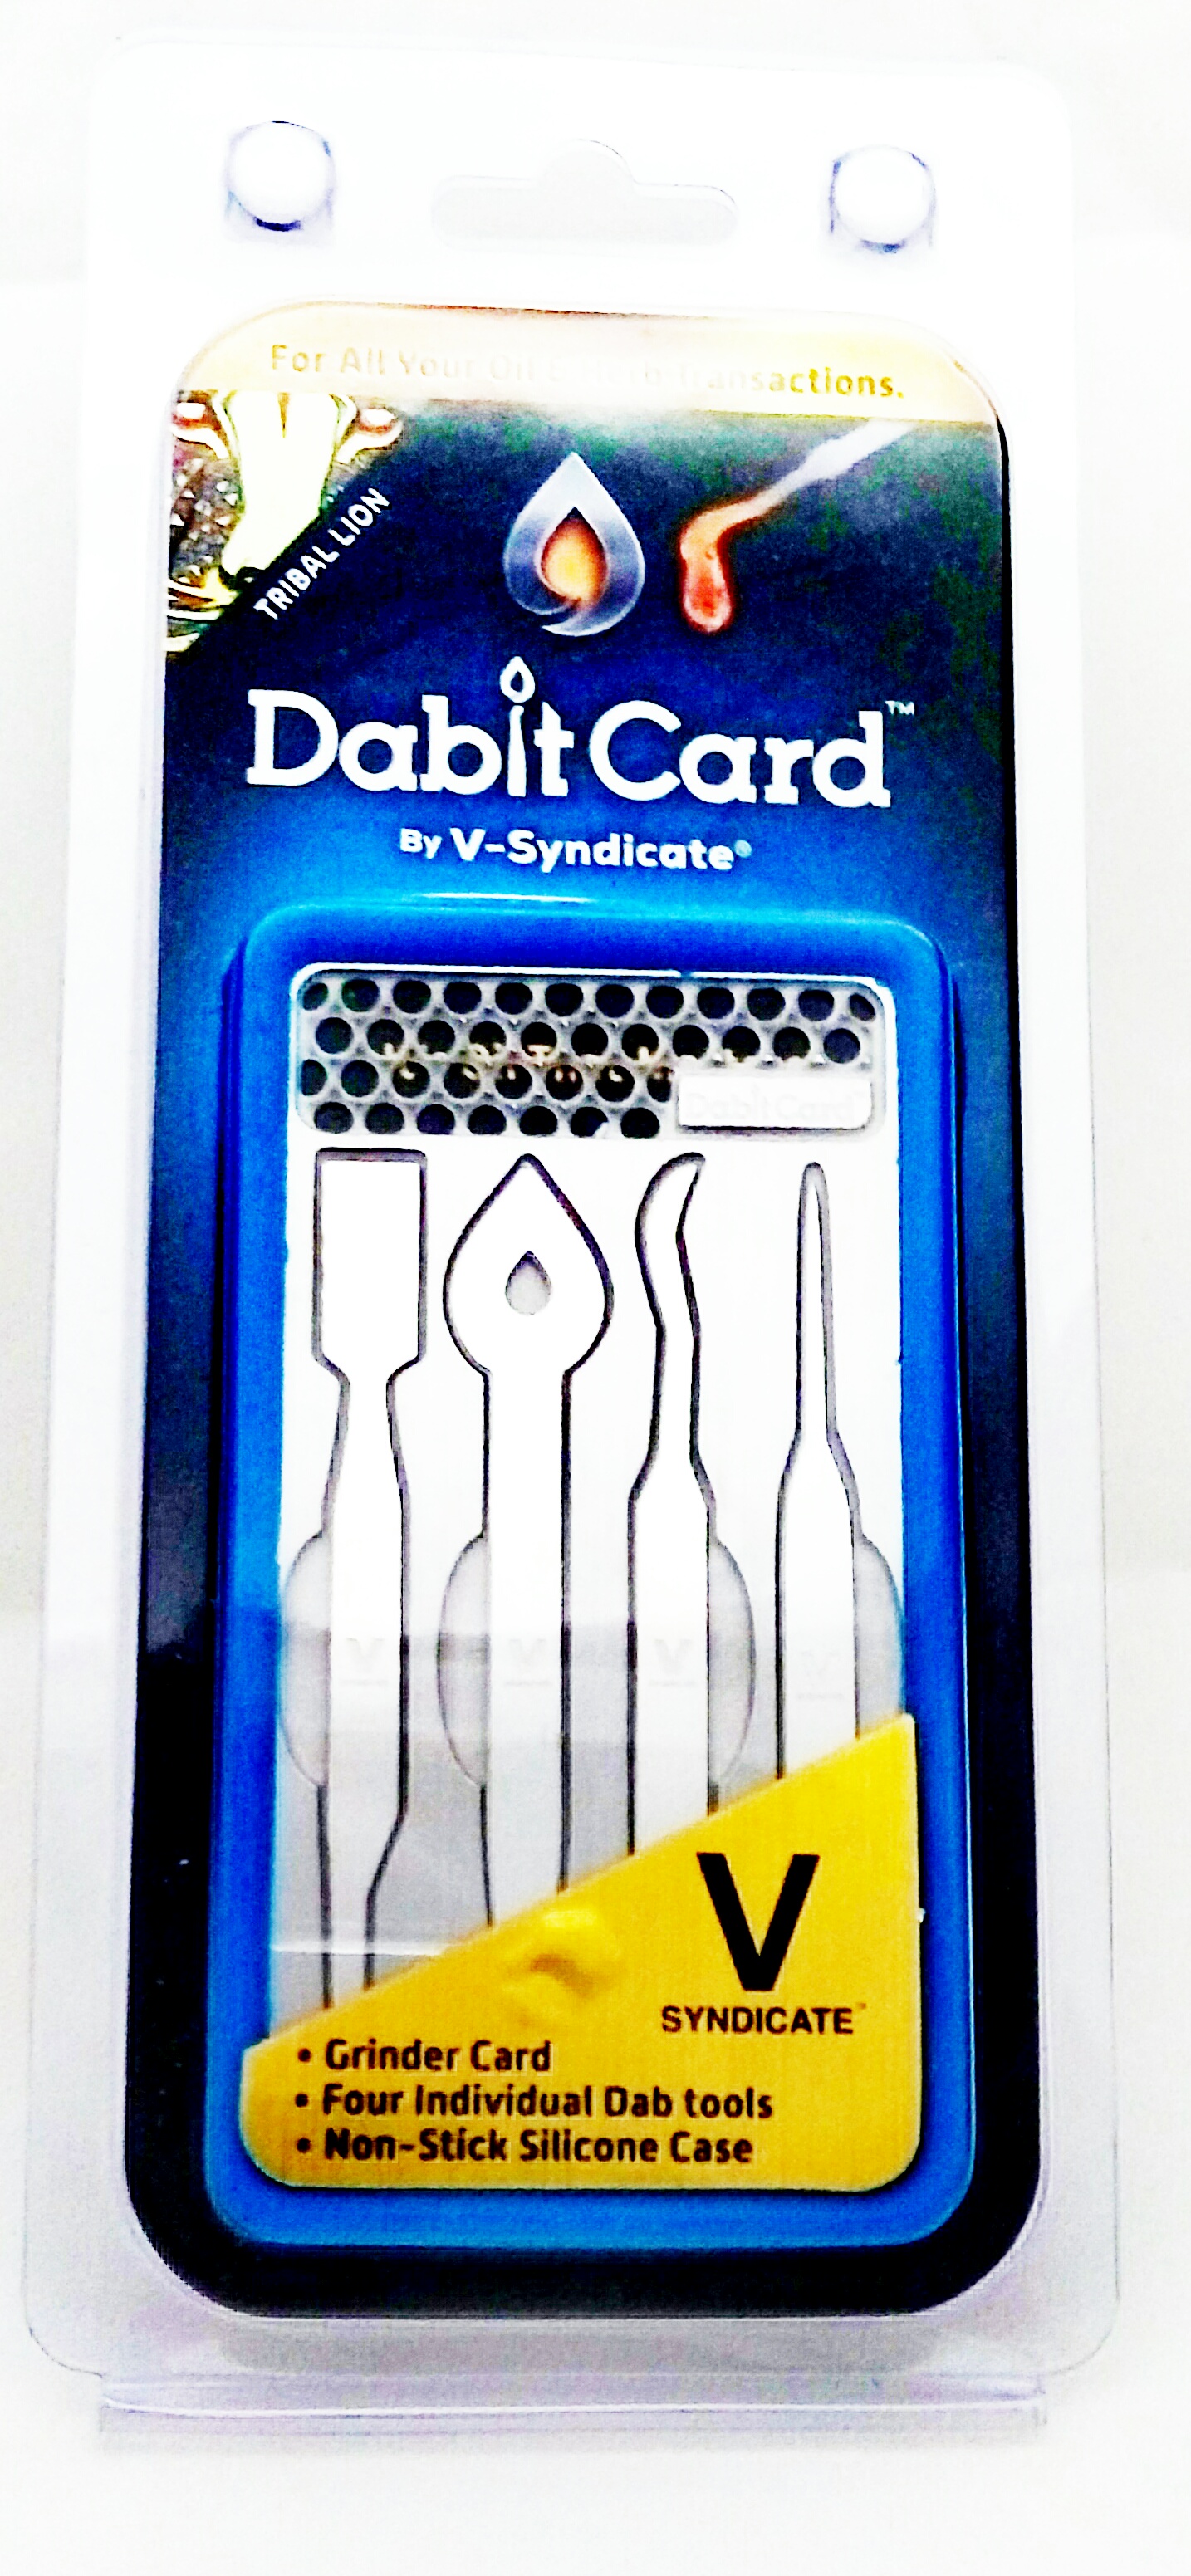 Tarjeta Dabit Card Vsyndicate - Modelo Hamsa (Dabber portátil)